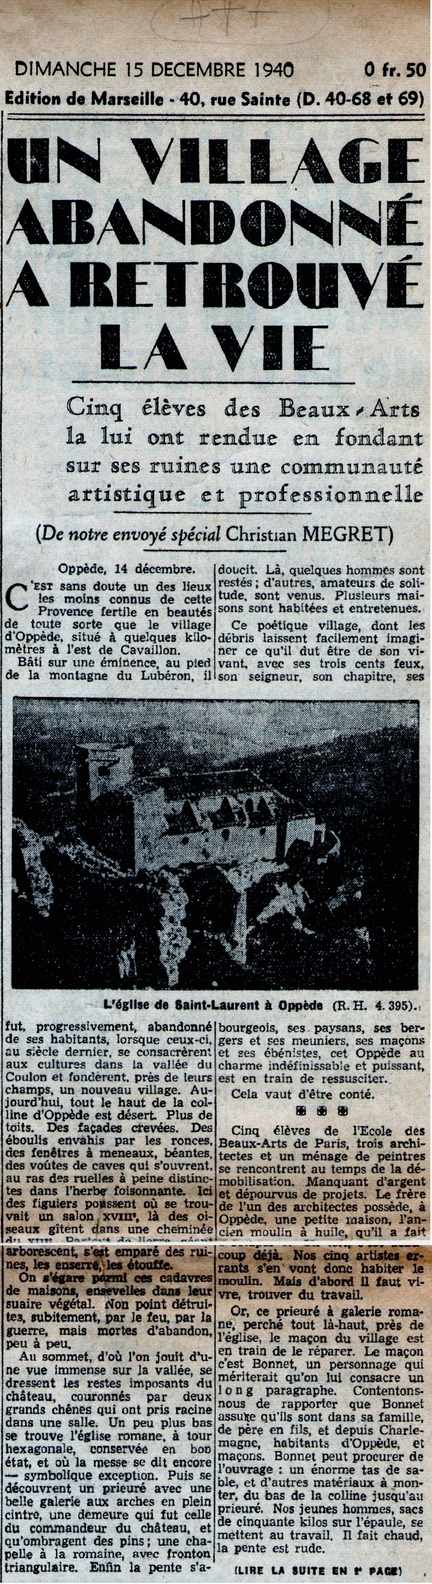 Un village abandonn a retrouv la vie - Le Jour L'Echo de Paris, 15 dcembre 1940